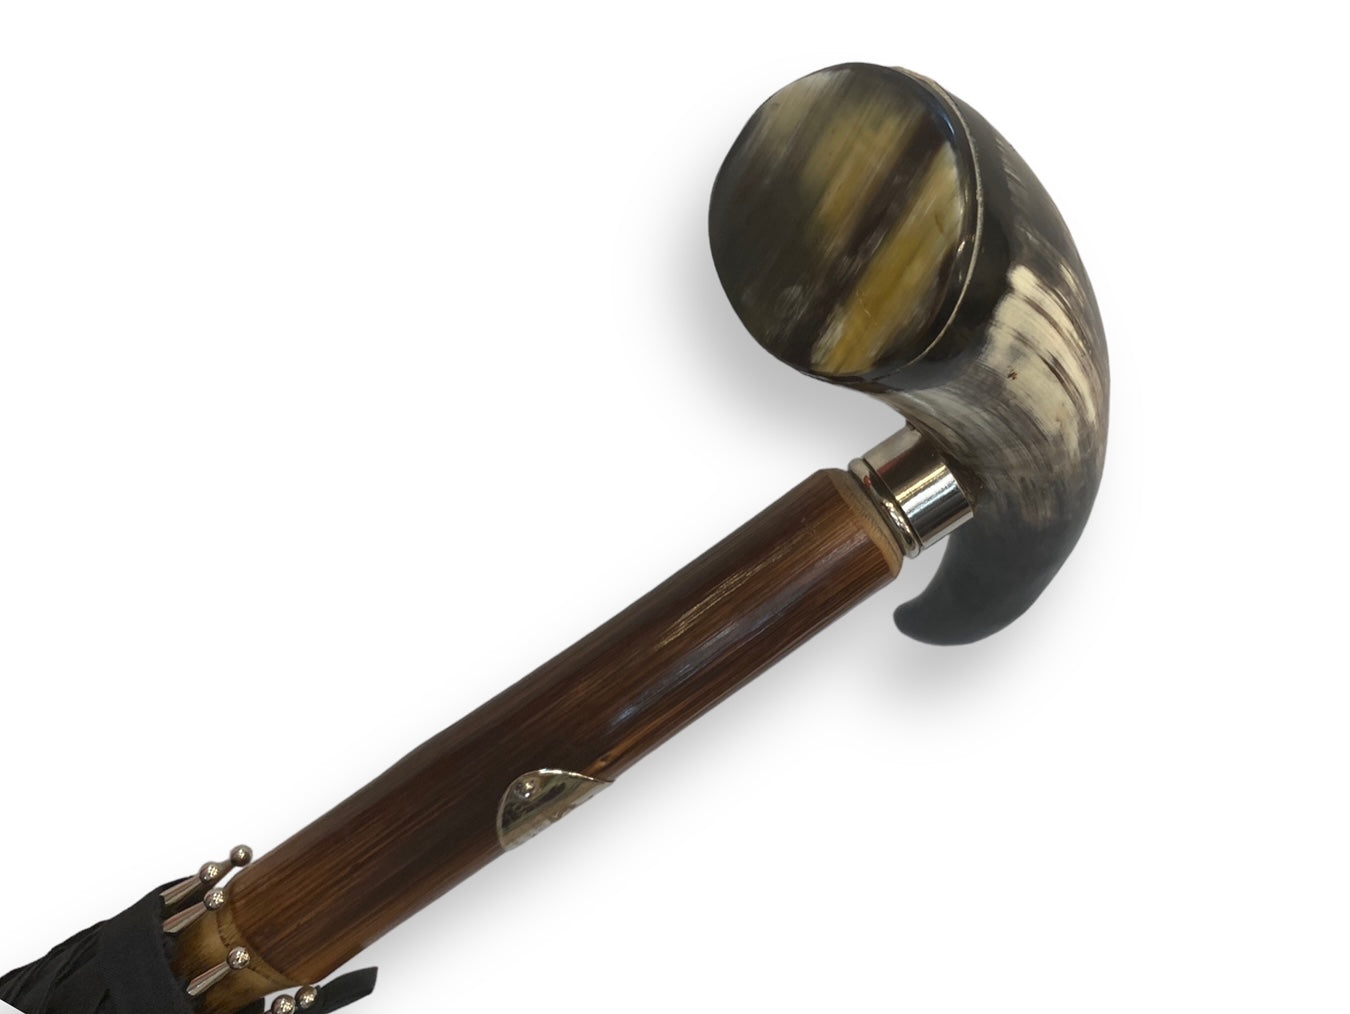 Ombrello con manopola in coda di corno bastone in legno Castagno lavorazione artigianale Ombrelli Domizio dal 1989 Made in Italy